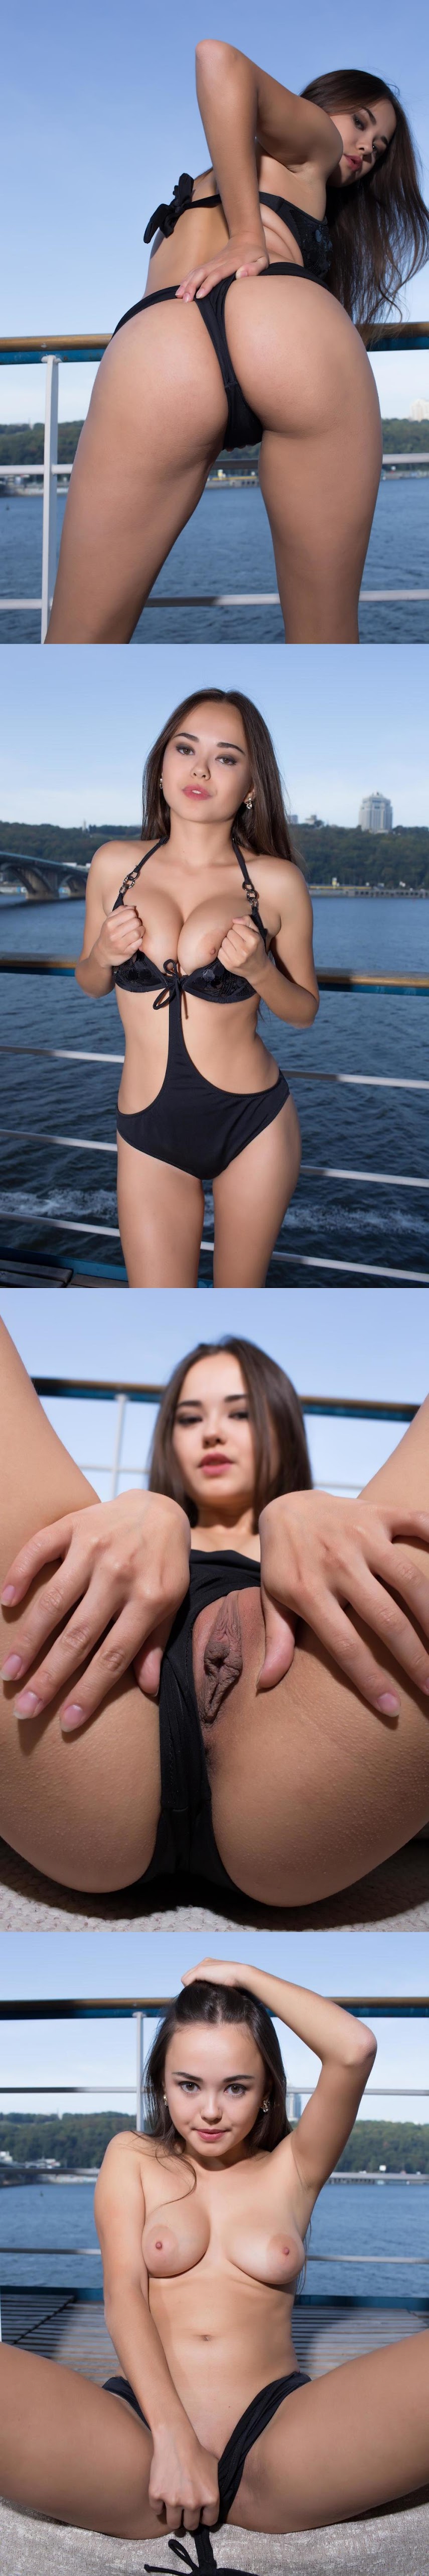 LeeMoo YT  20151108 LeeMoon-On the boat sexy girls image jav